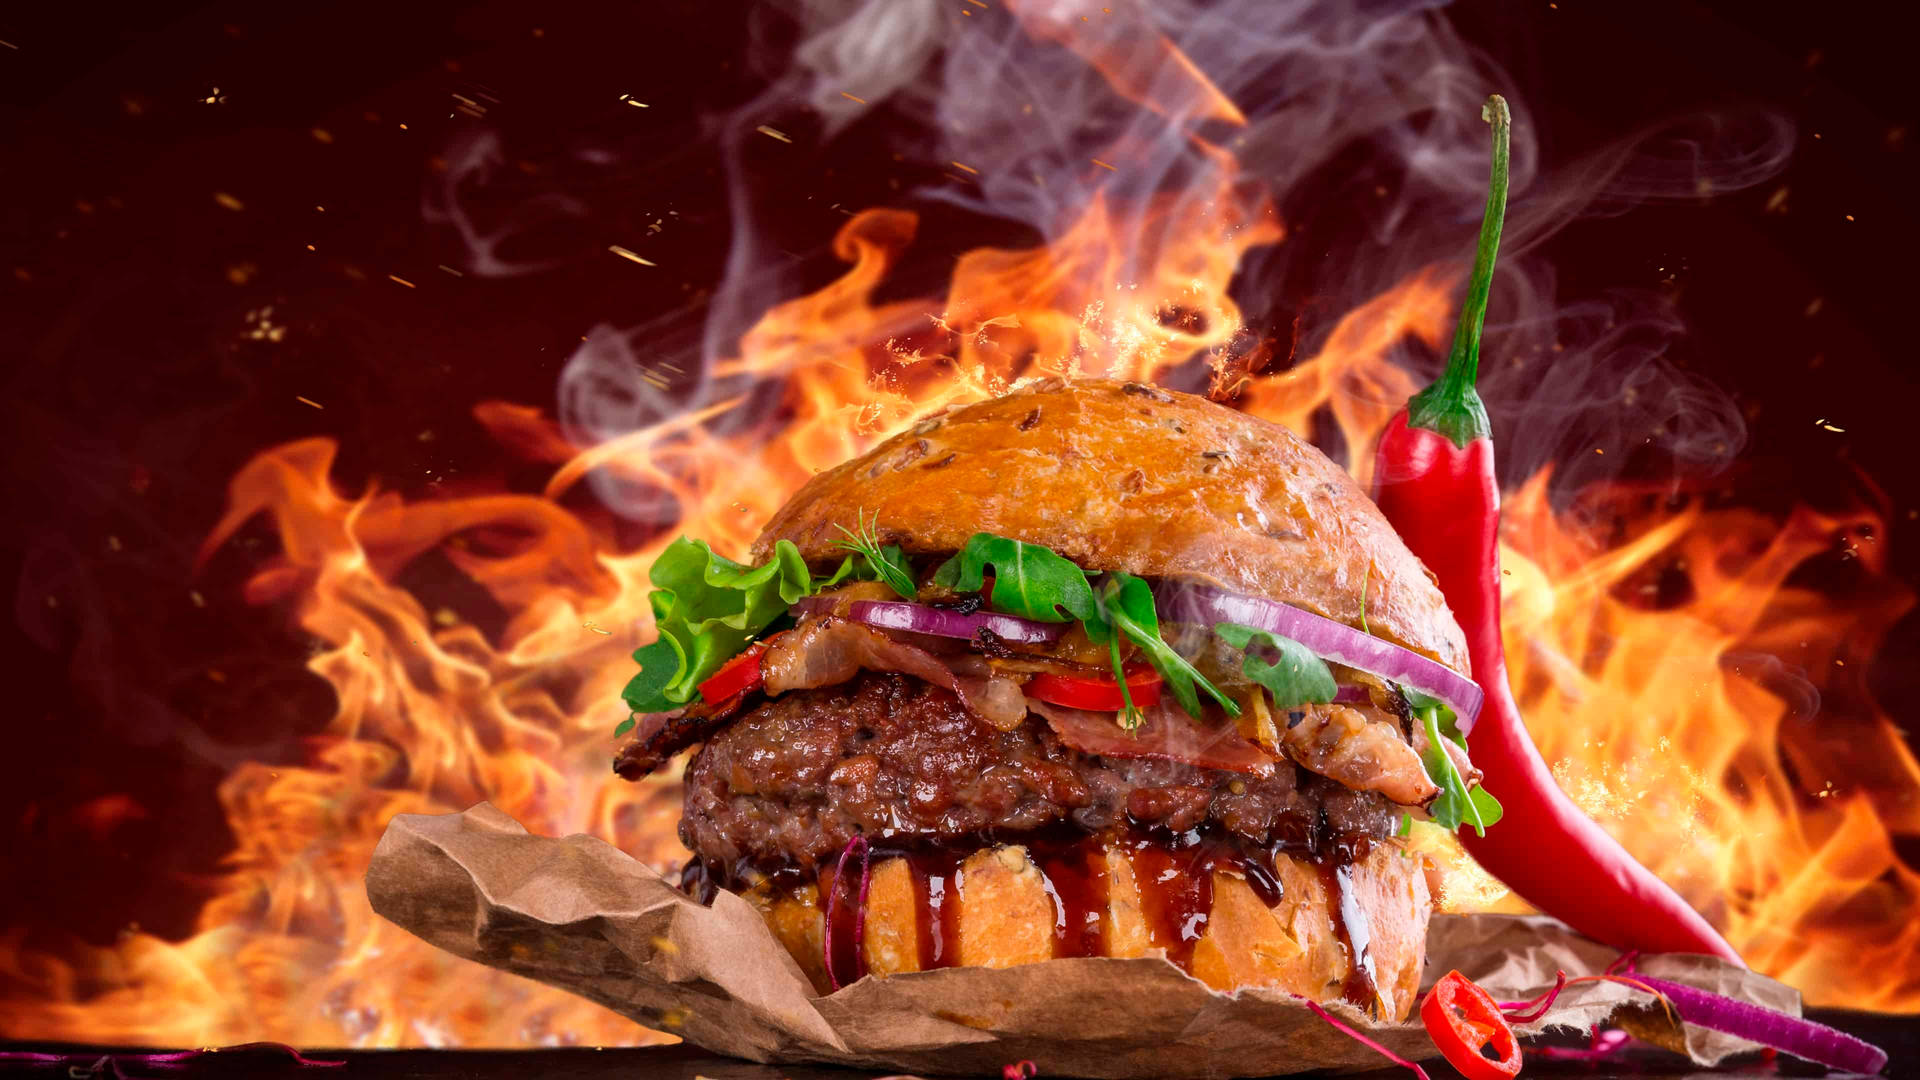 Burgerking Flamm-burger Wallpaper